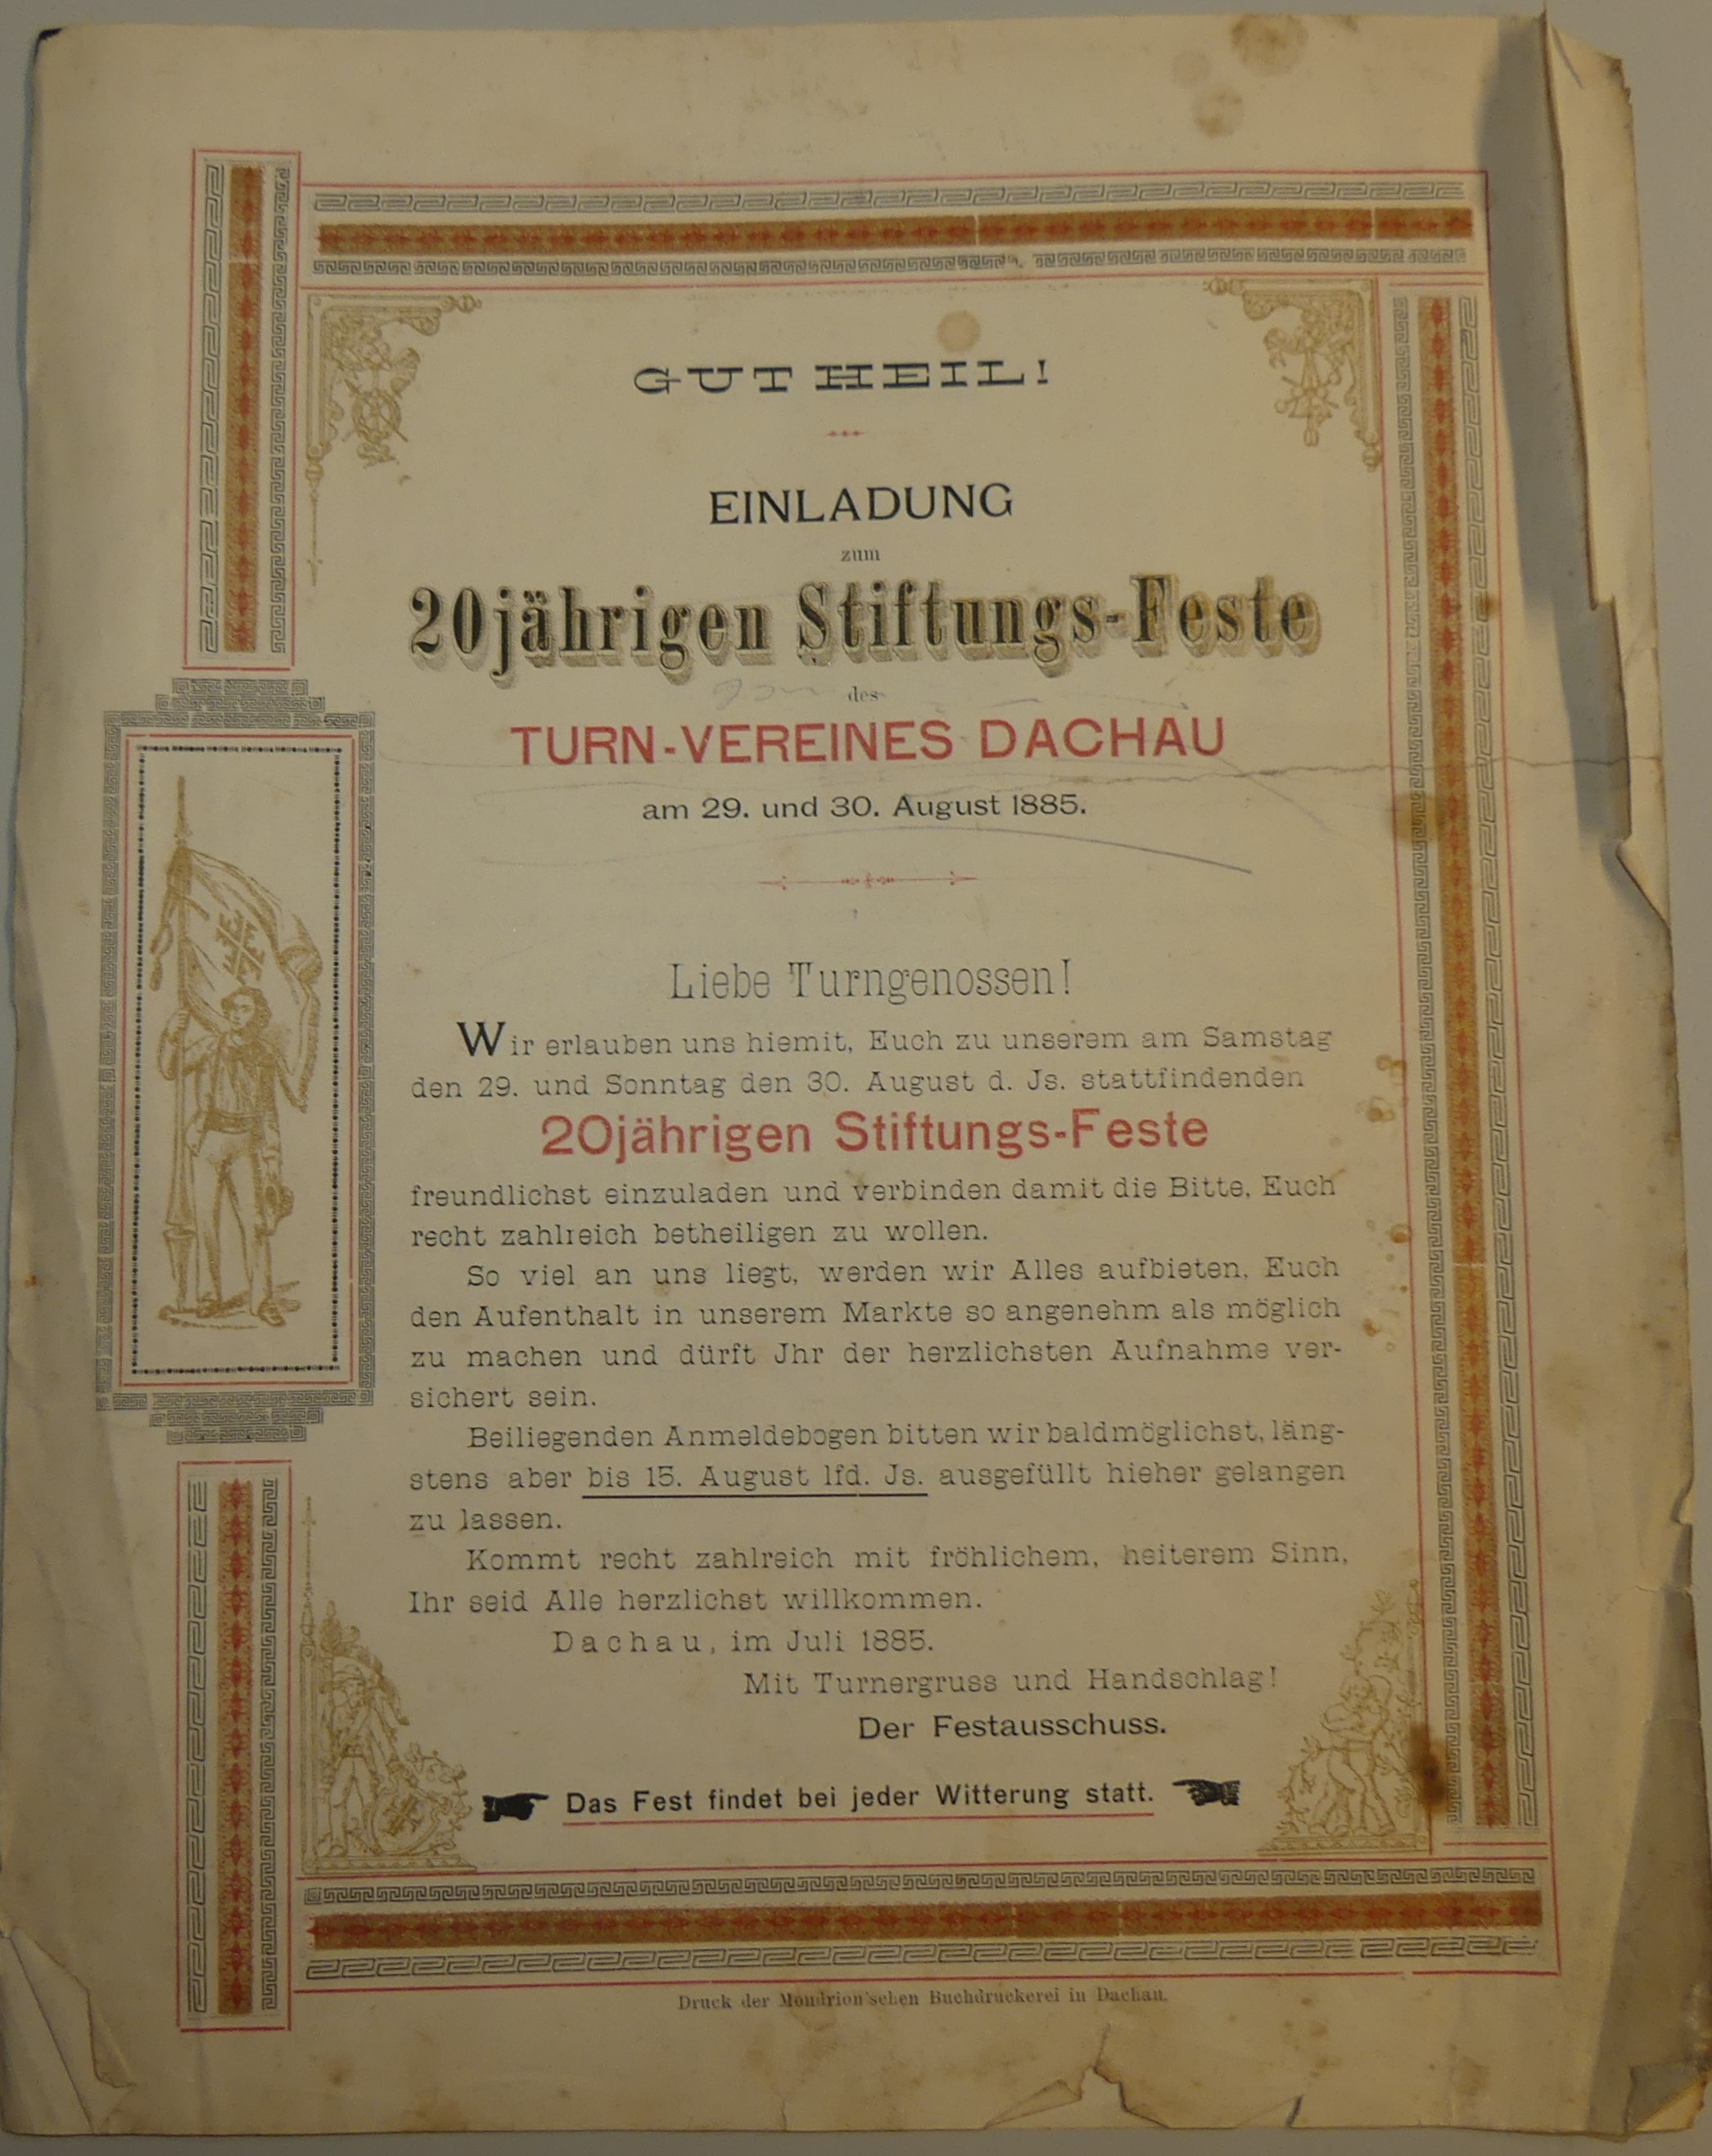  zum 20jährigen Stiftungsfestes des Turn-Vereines Dachau am 29./30. August 1885